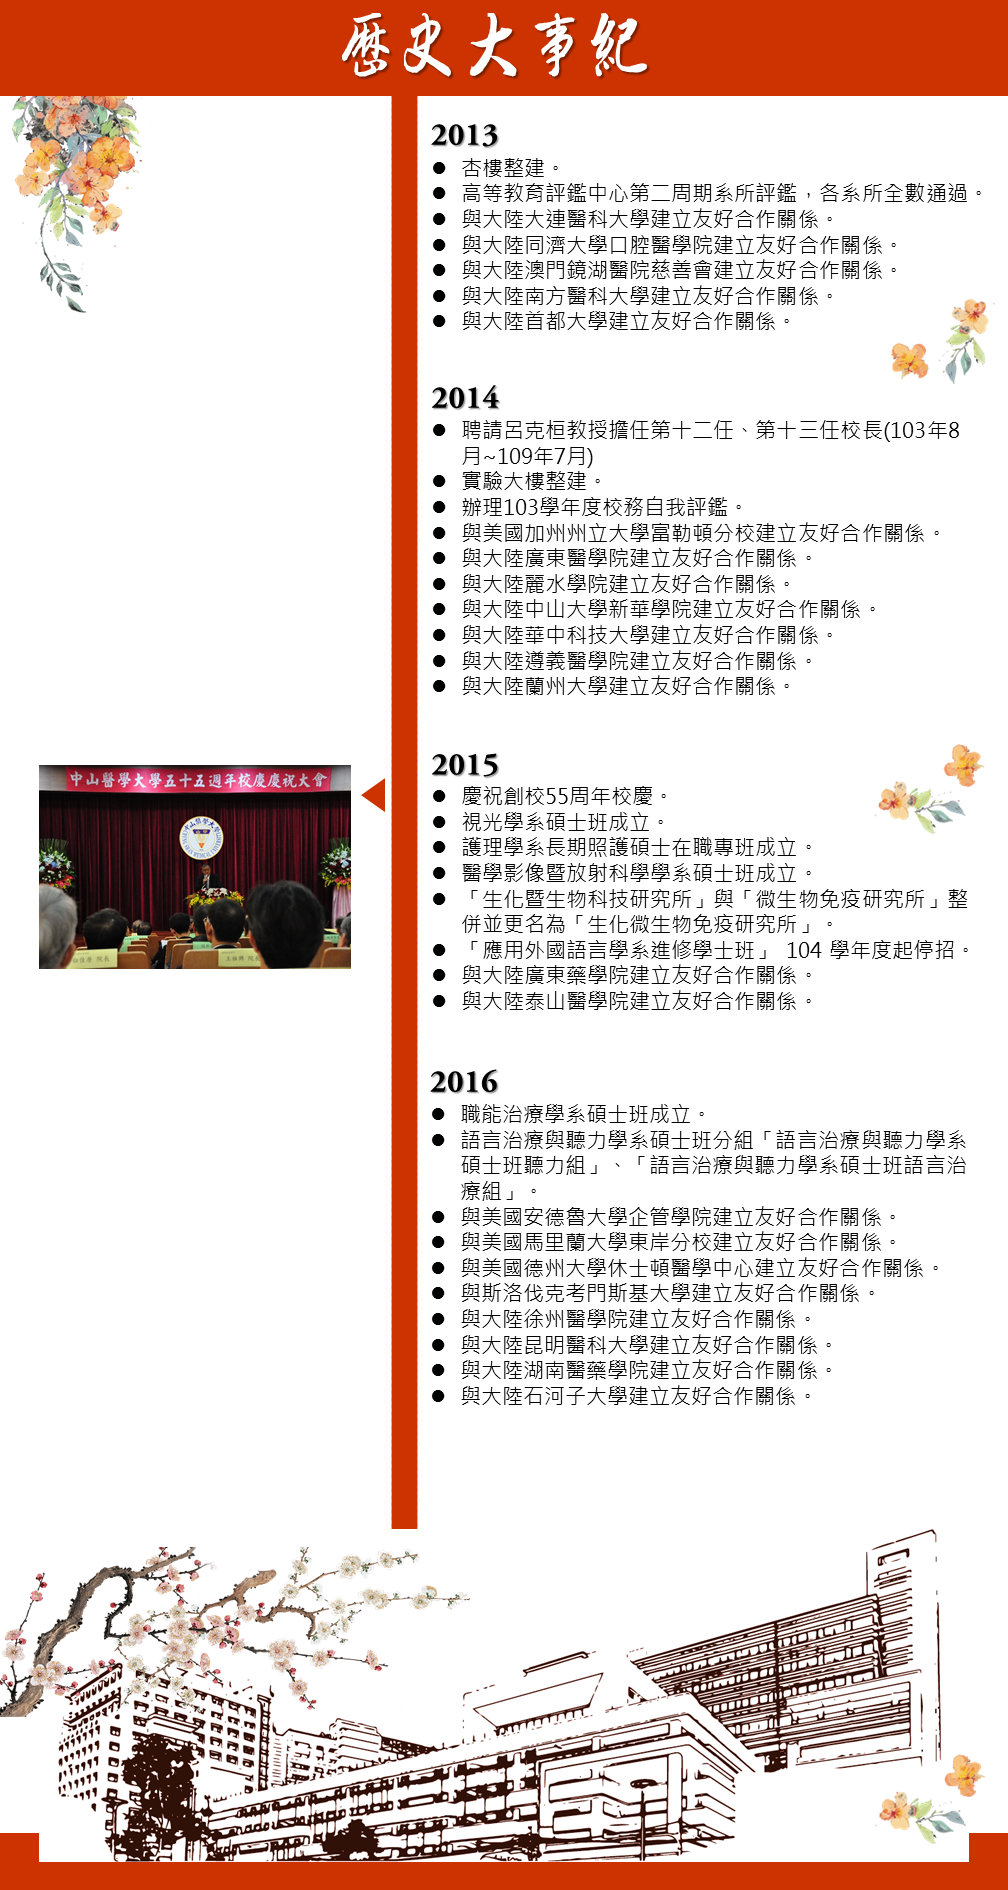 歷史大事2013~2016